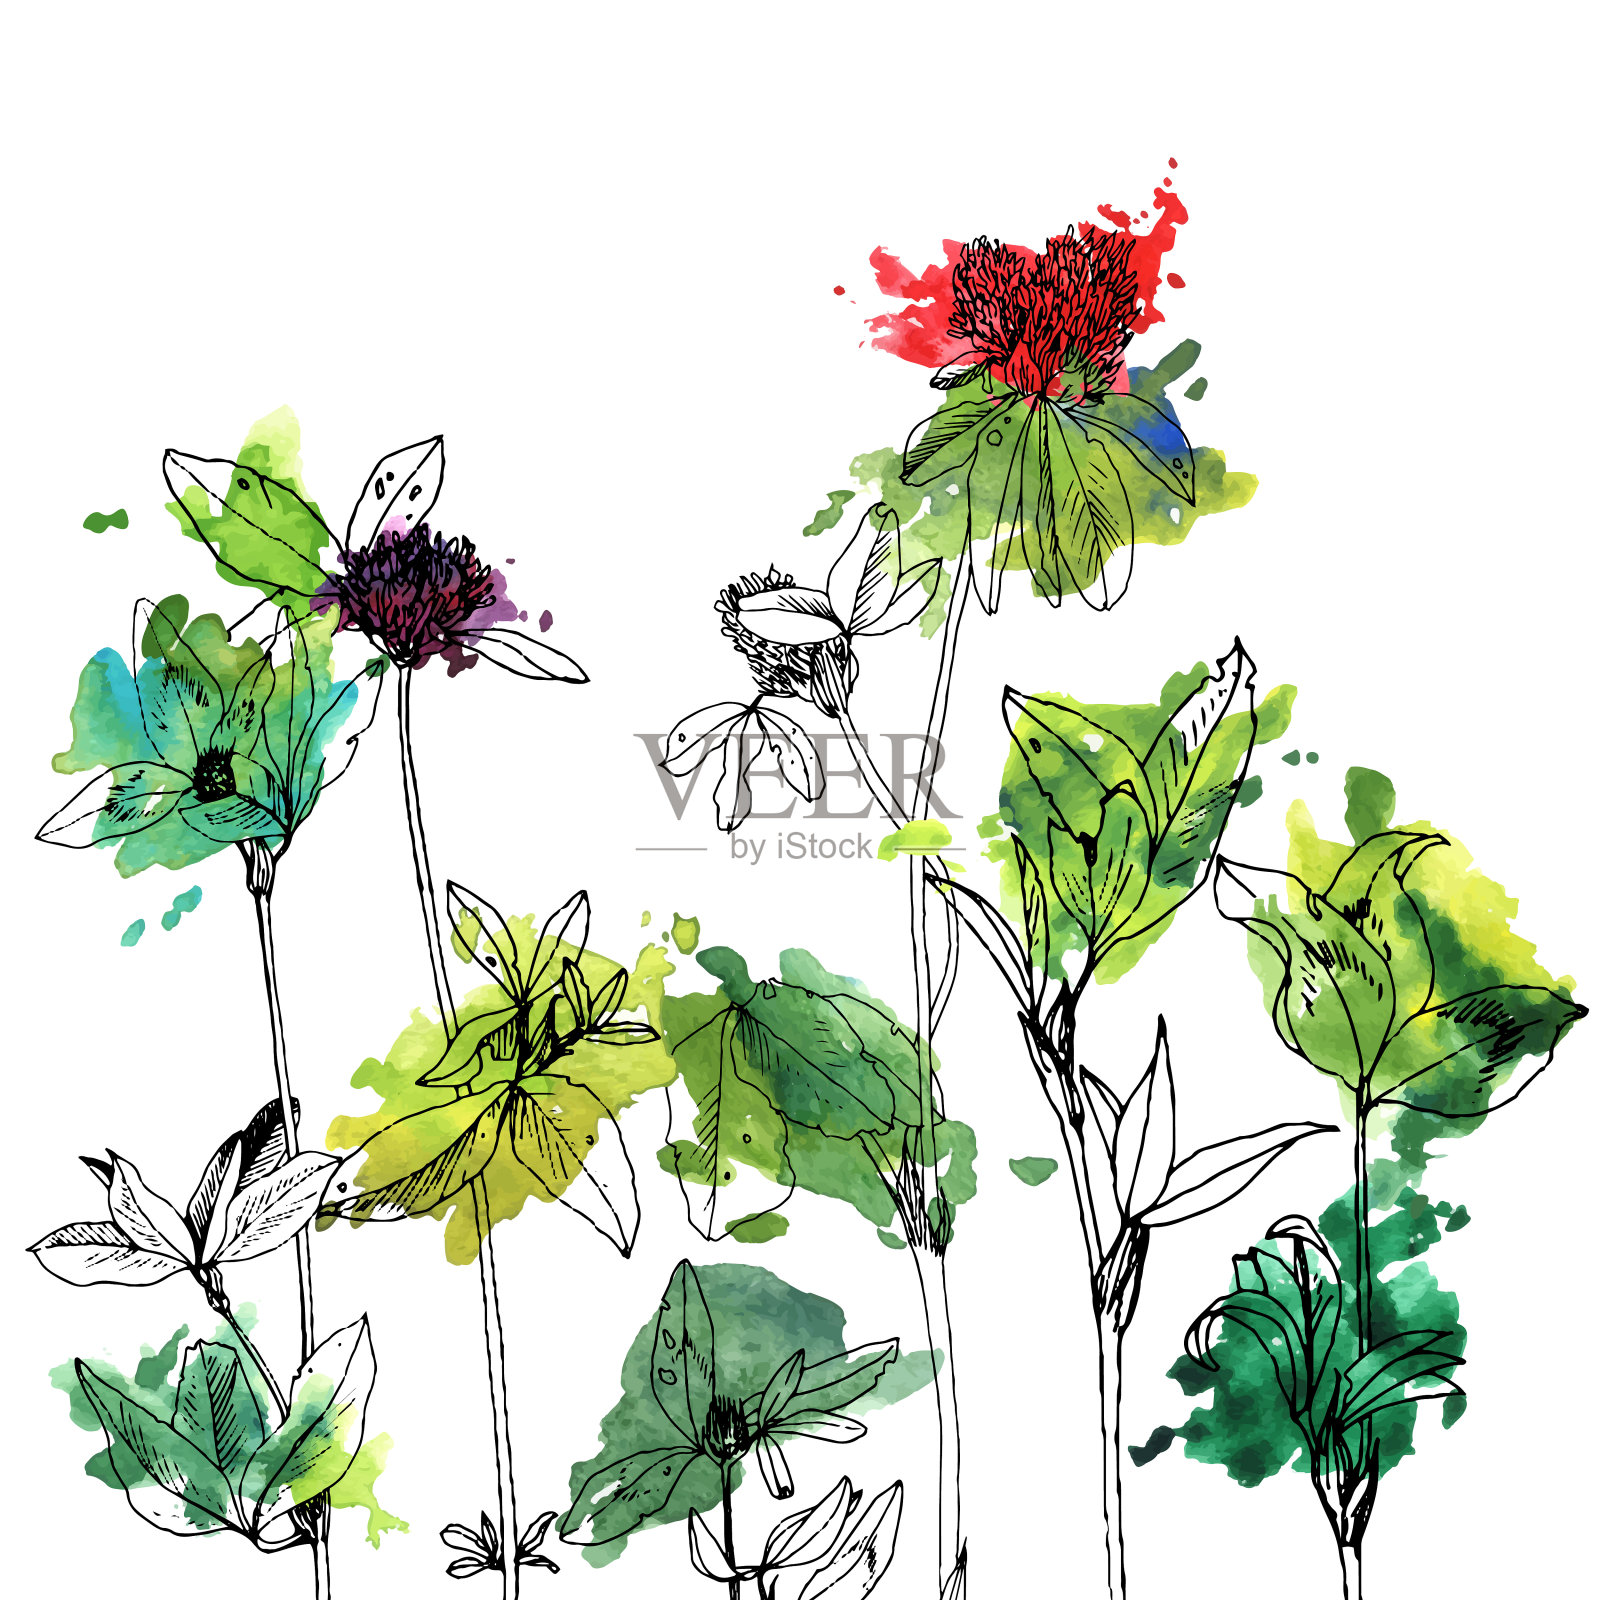 背景与绘制草本和花卉设计元素图片